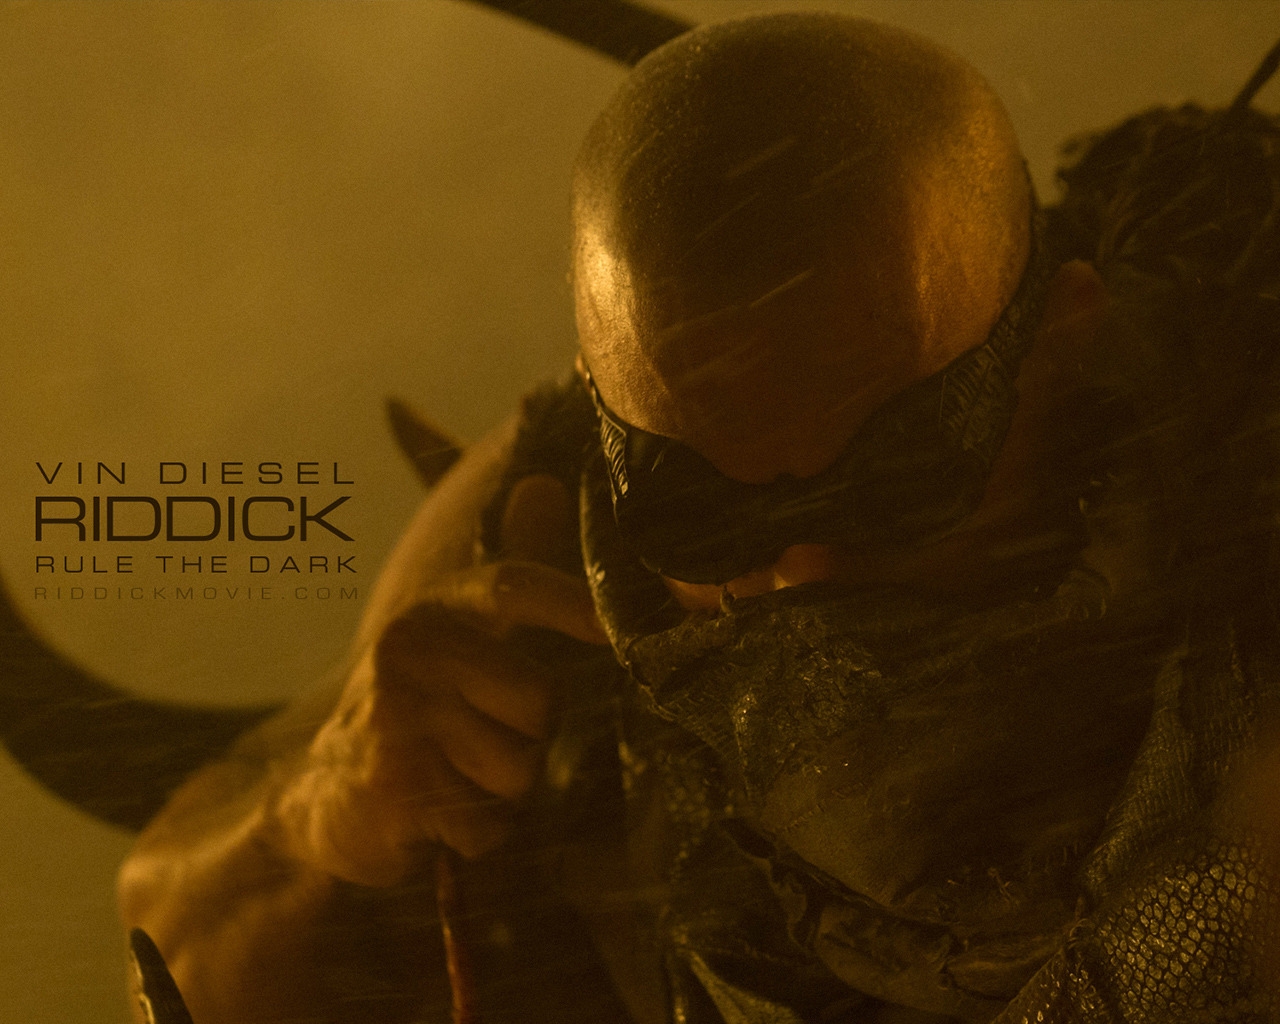 Vin Diesel Riddick for 1280 x 1024 resolution